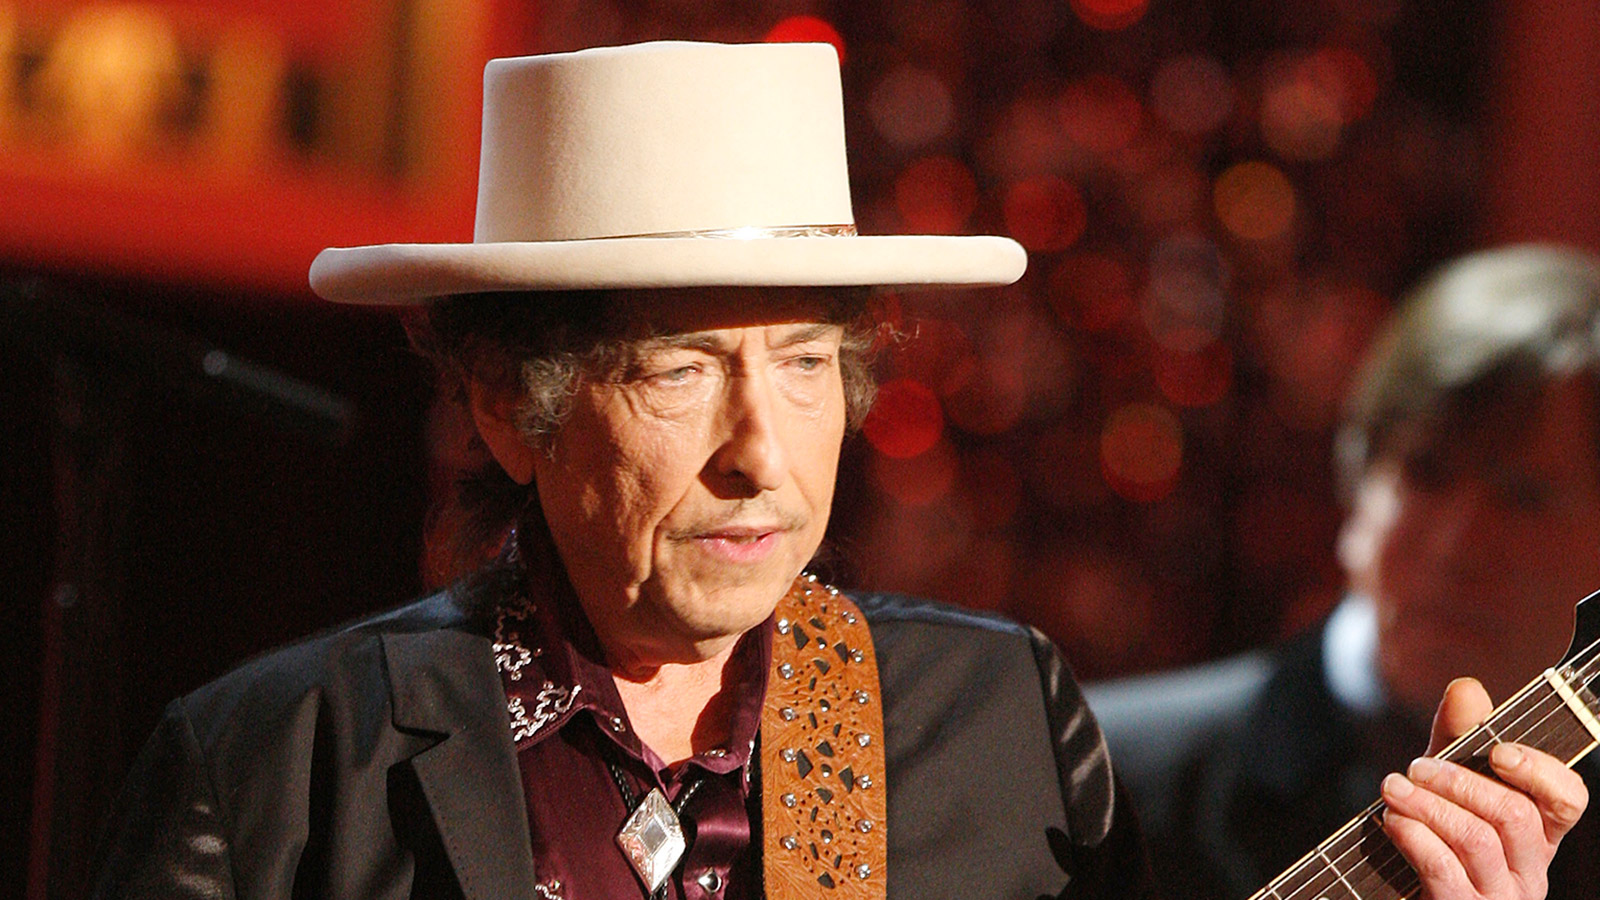 Боб Дилан стал участником скандала из-за обмана фанатов | РБК Life